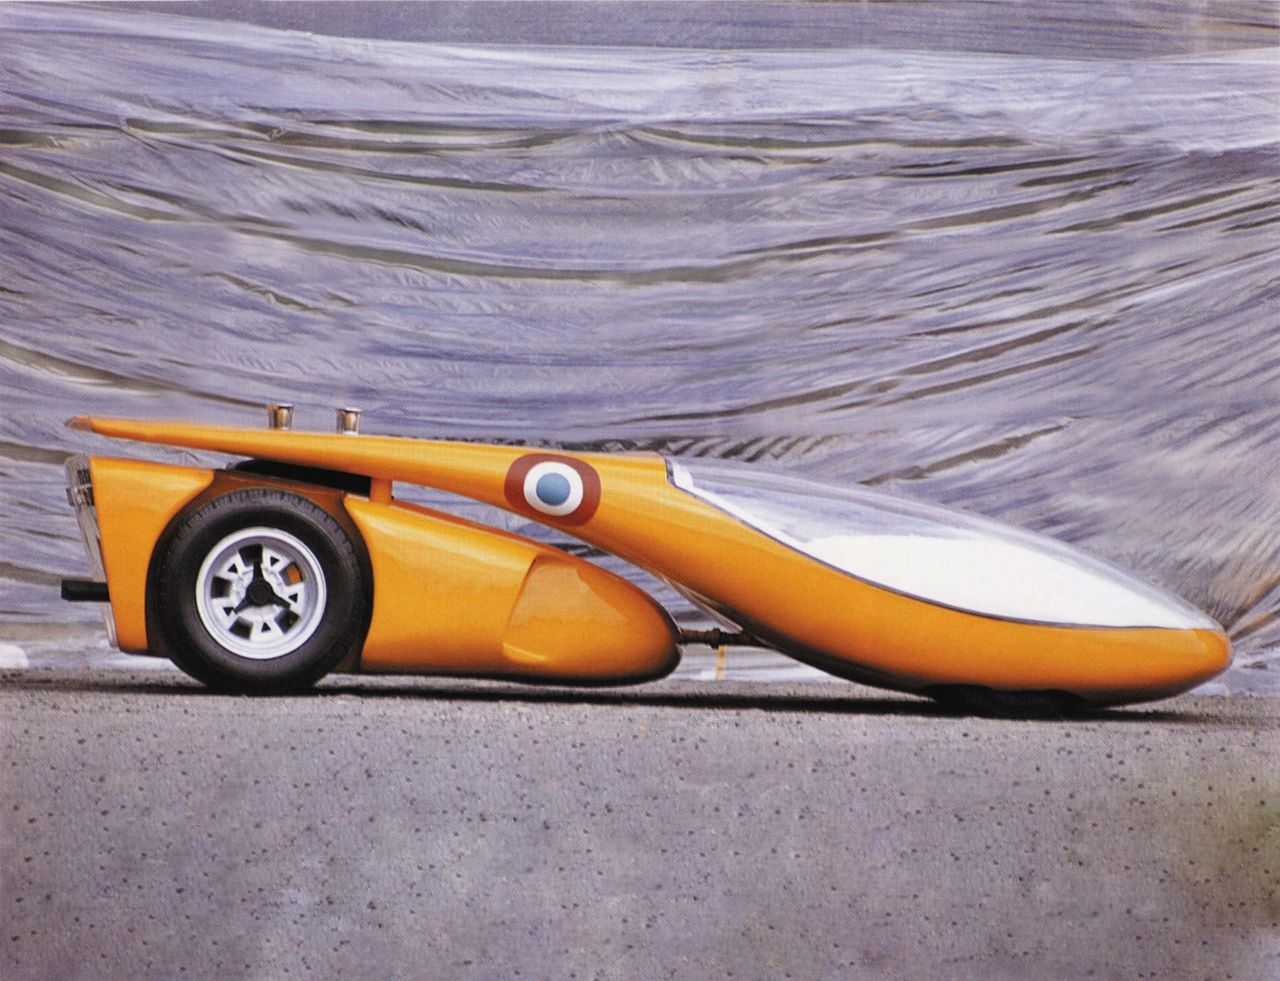 Studium samochodu sportowego z roku 1970. W tylnym module znajduje się układ napędowy z Lamborghini Miury (fot. archiwum Colani)